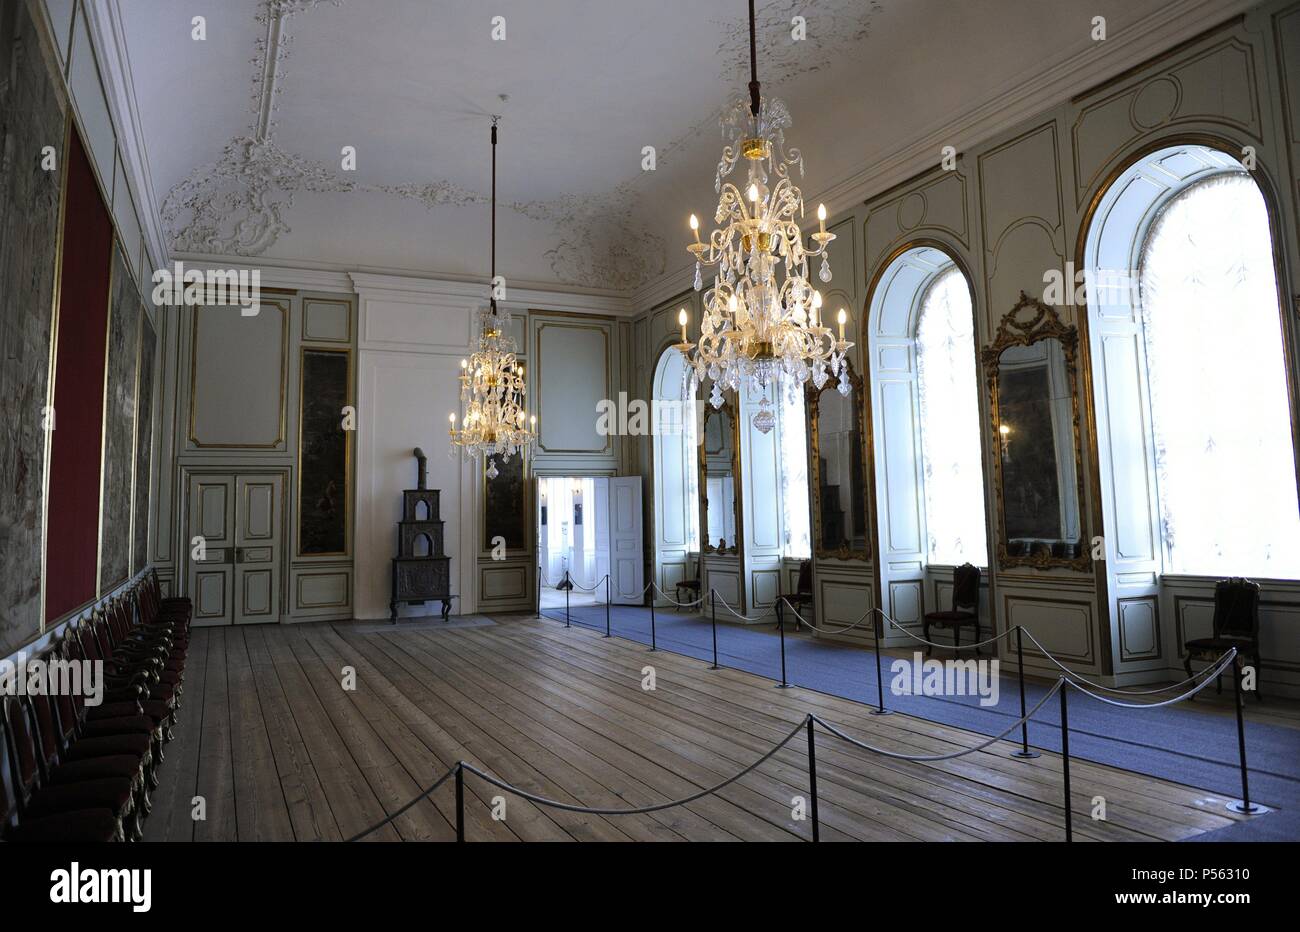 Dänemark. Kopenhagen. Natinal Museum von Dänemark. Große Halle im Jahre 1745 eingerichtet. Im Inneren. Stockfoto